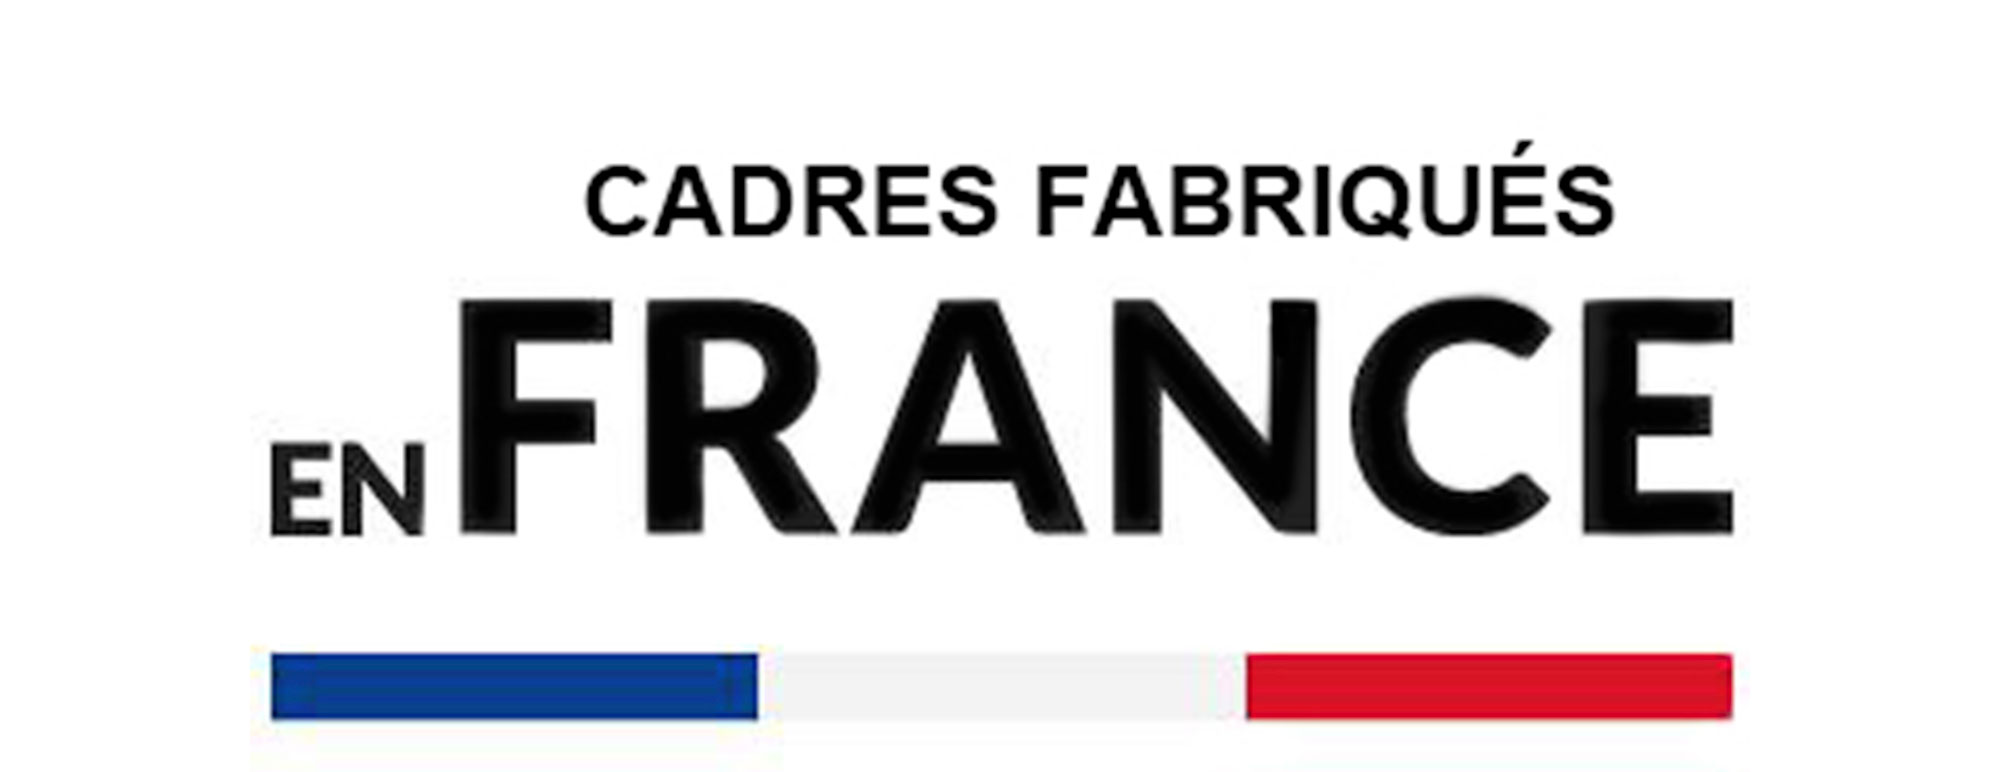 Frame made in France